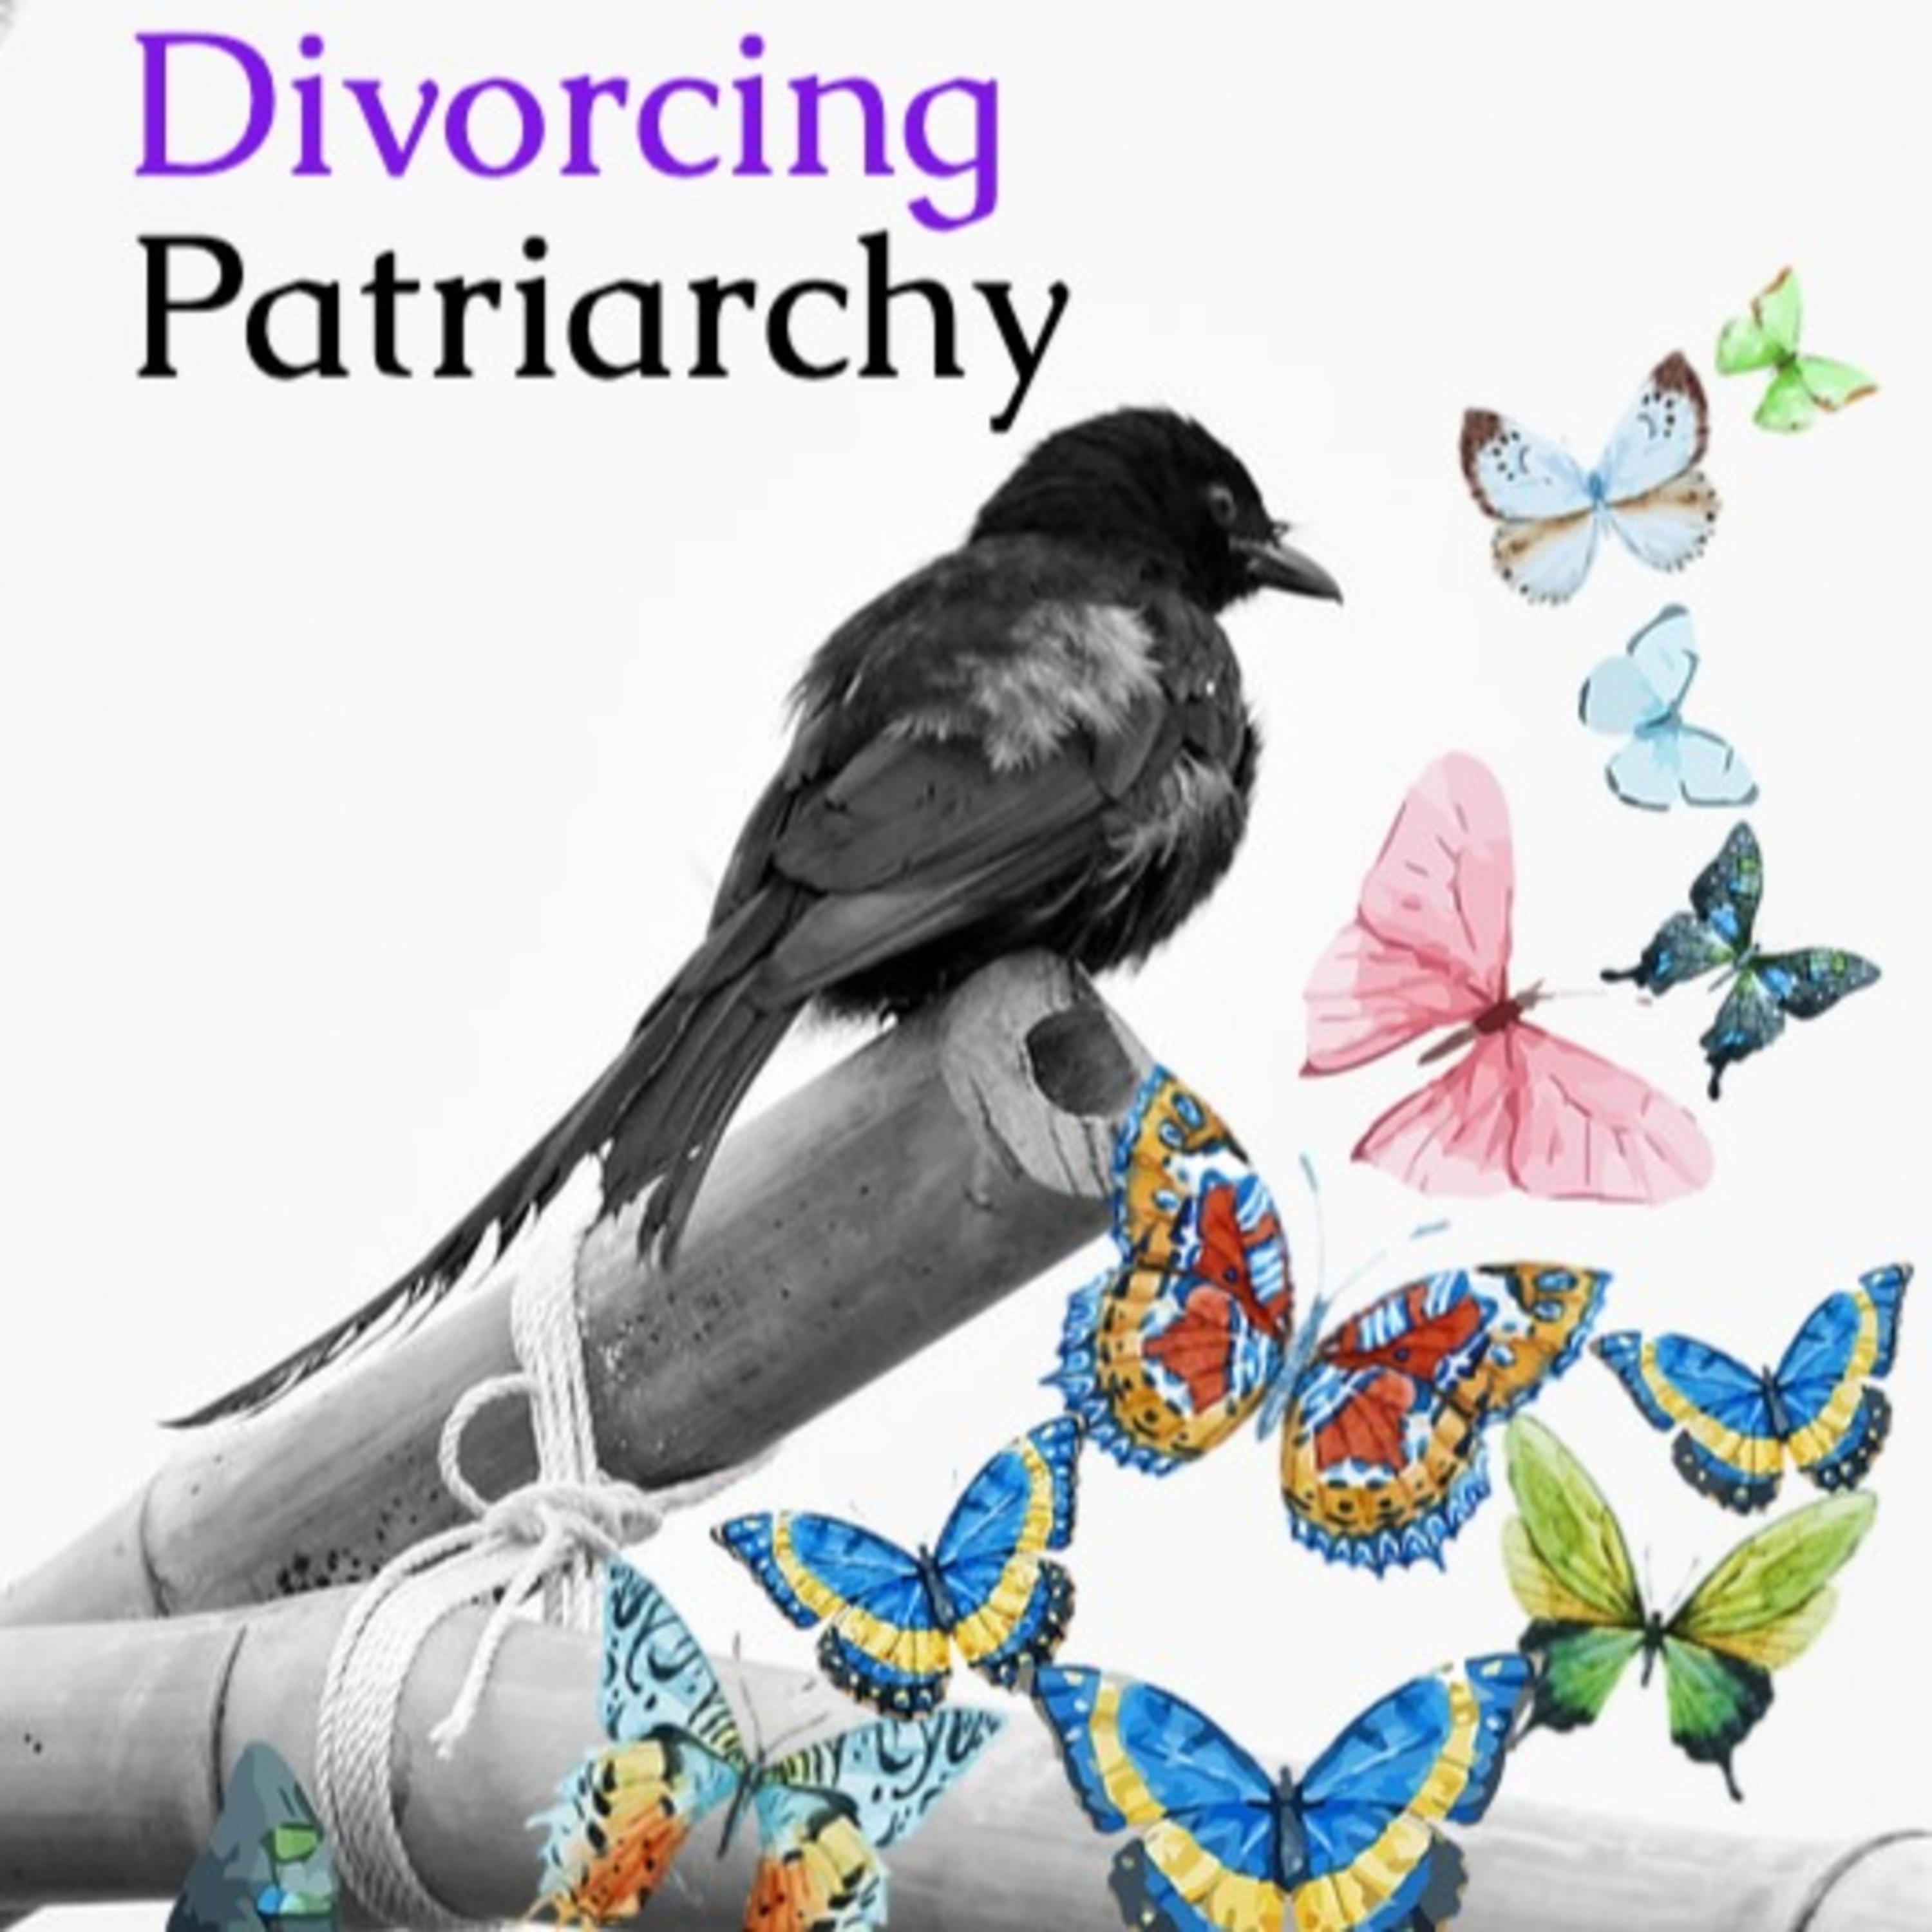 DIVORCING PATRIARCHY